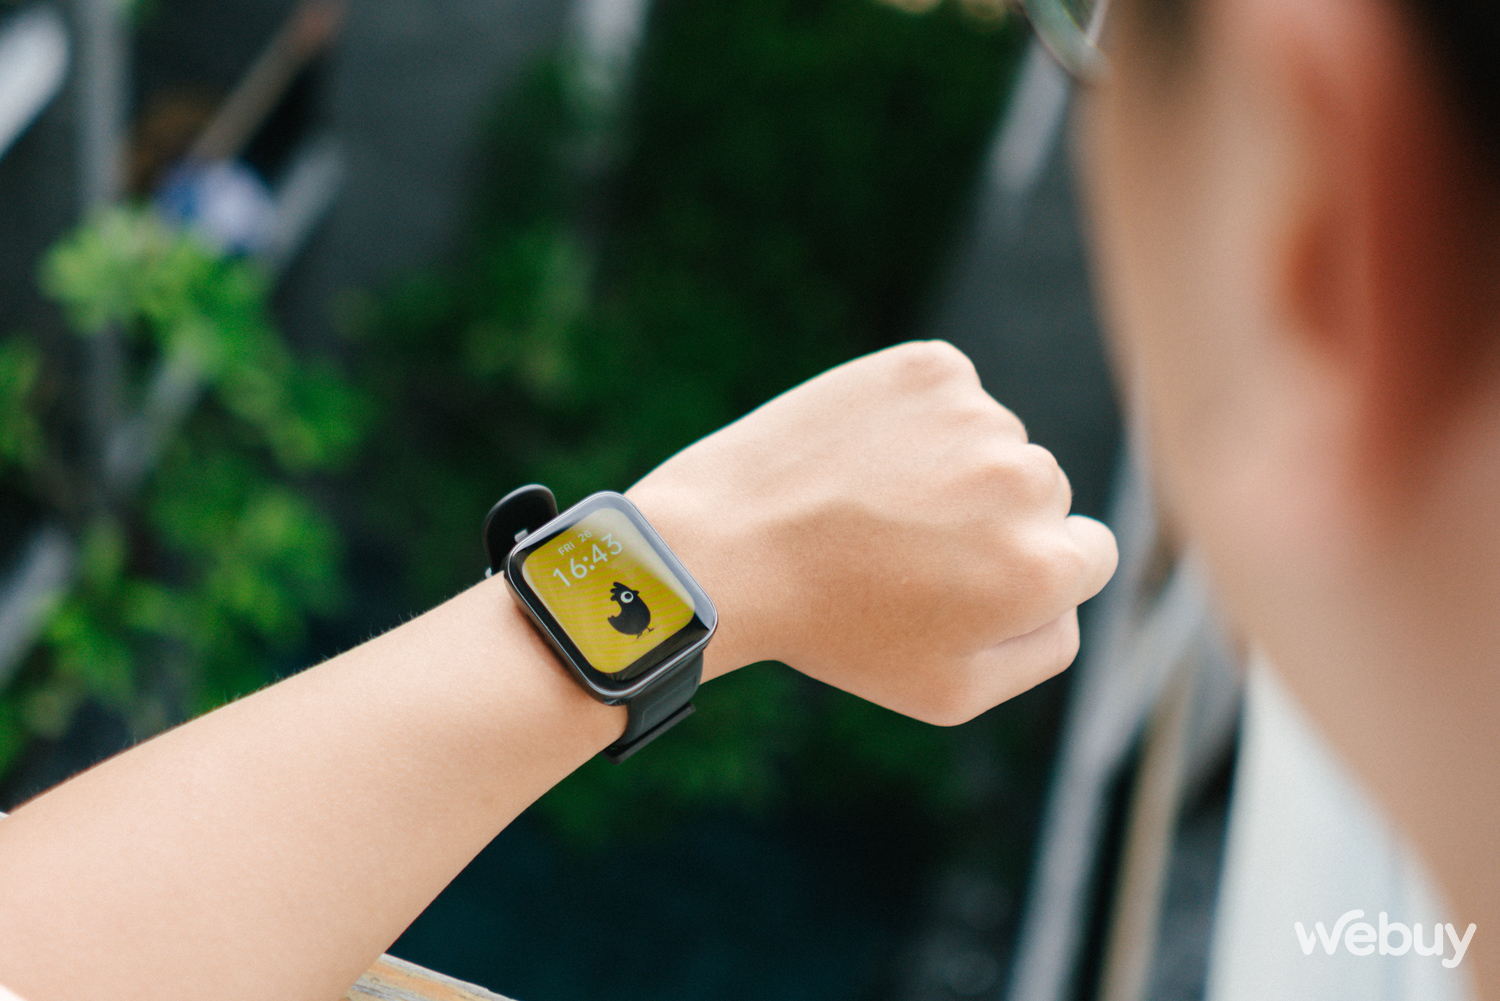 Trên tay đồng hồ realme Watch3: Thiết kế đẹp, pin dùng được 7 tiếng, có thể nghe gọi được - Ảnh 1.